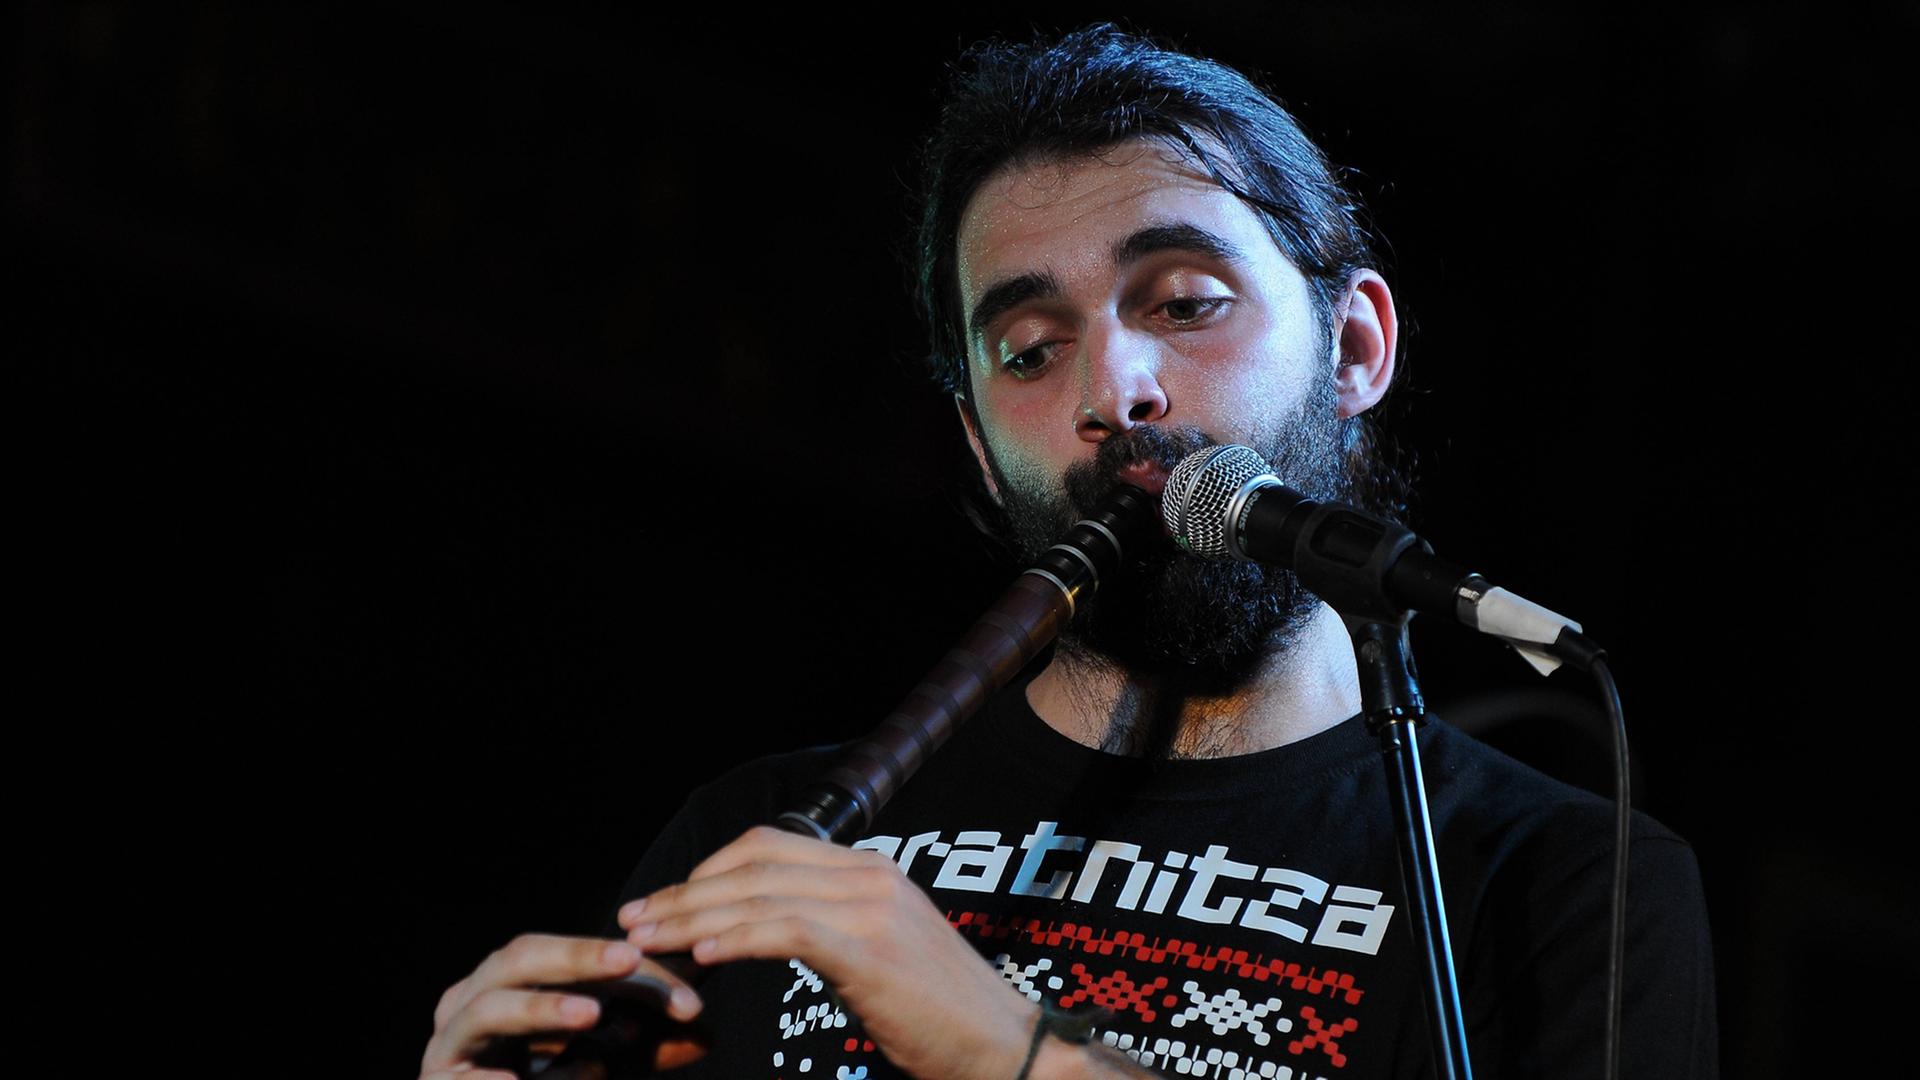 Hristyan Georgiev von der bulgarischen Band Oratnitza performt beim Penang World Music Festival 2013 in Malaysia.